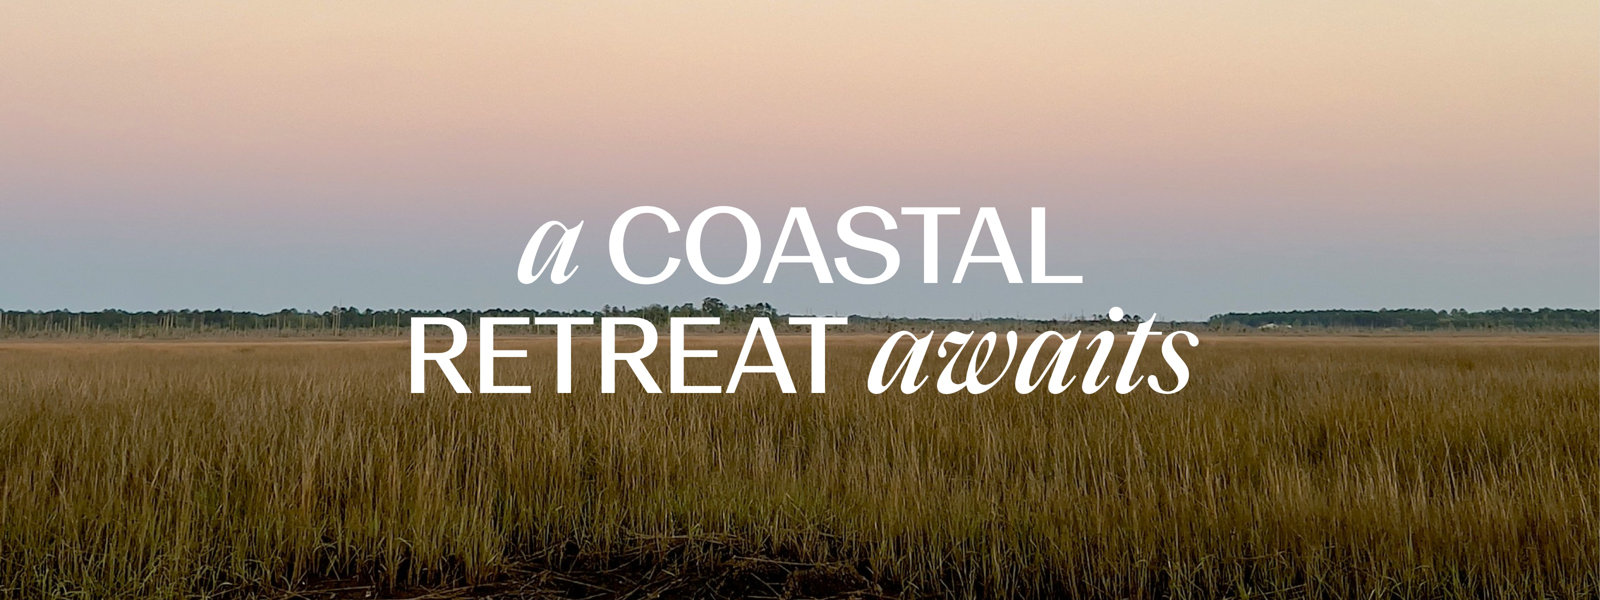 A Coastal Retreat Awaits